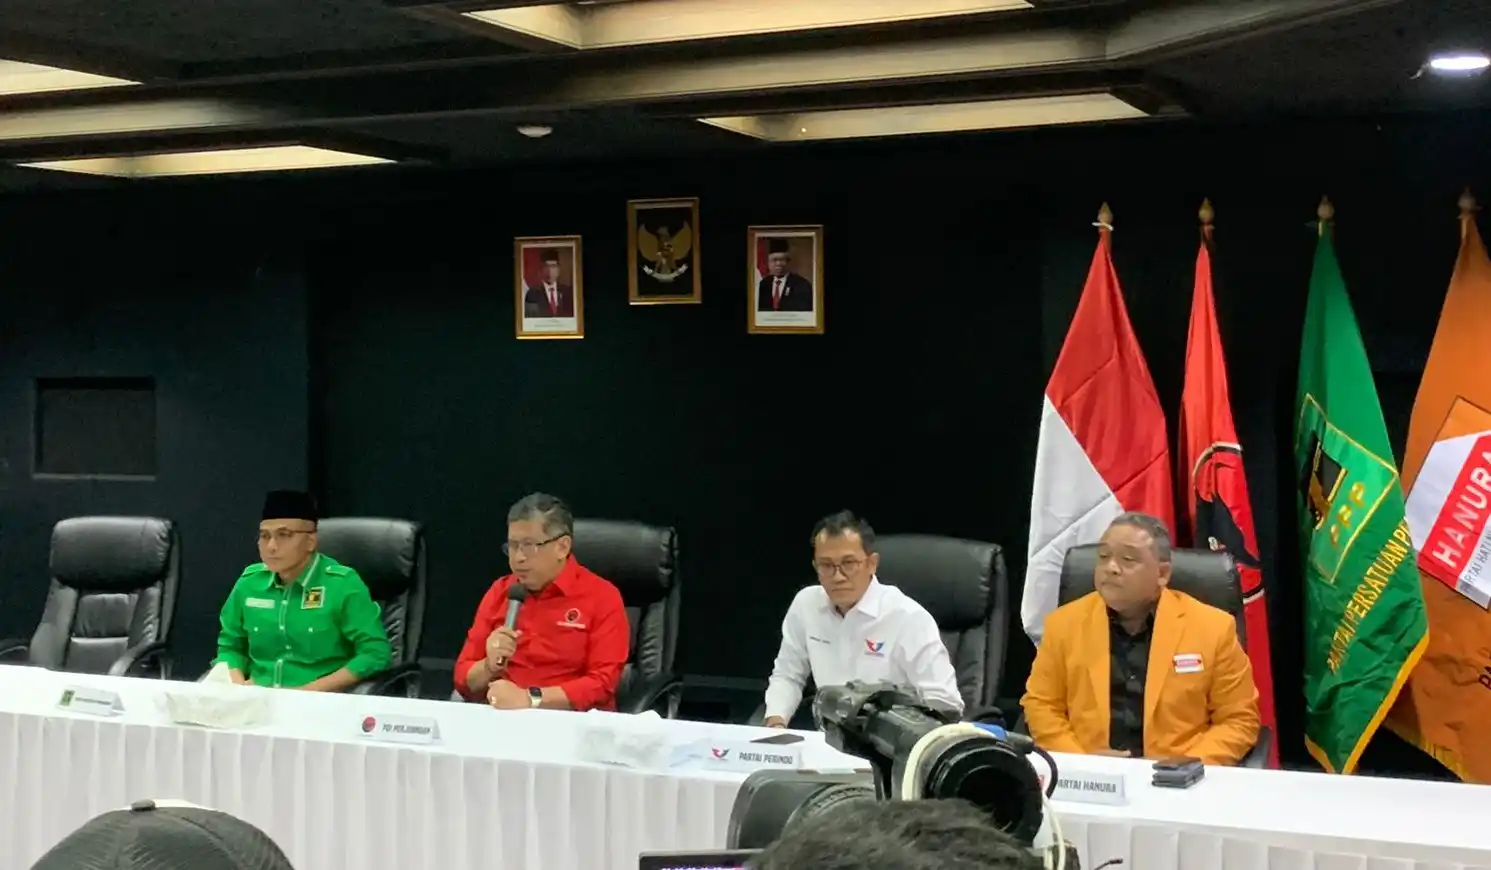 Ketum Parpol Pendukung Ganjar Pranowo Gelar Rapat Perdana, Hasto Sampaikan Materi Yang Dibahas